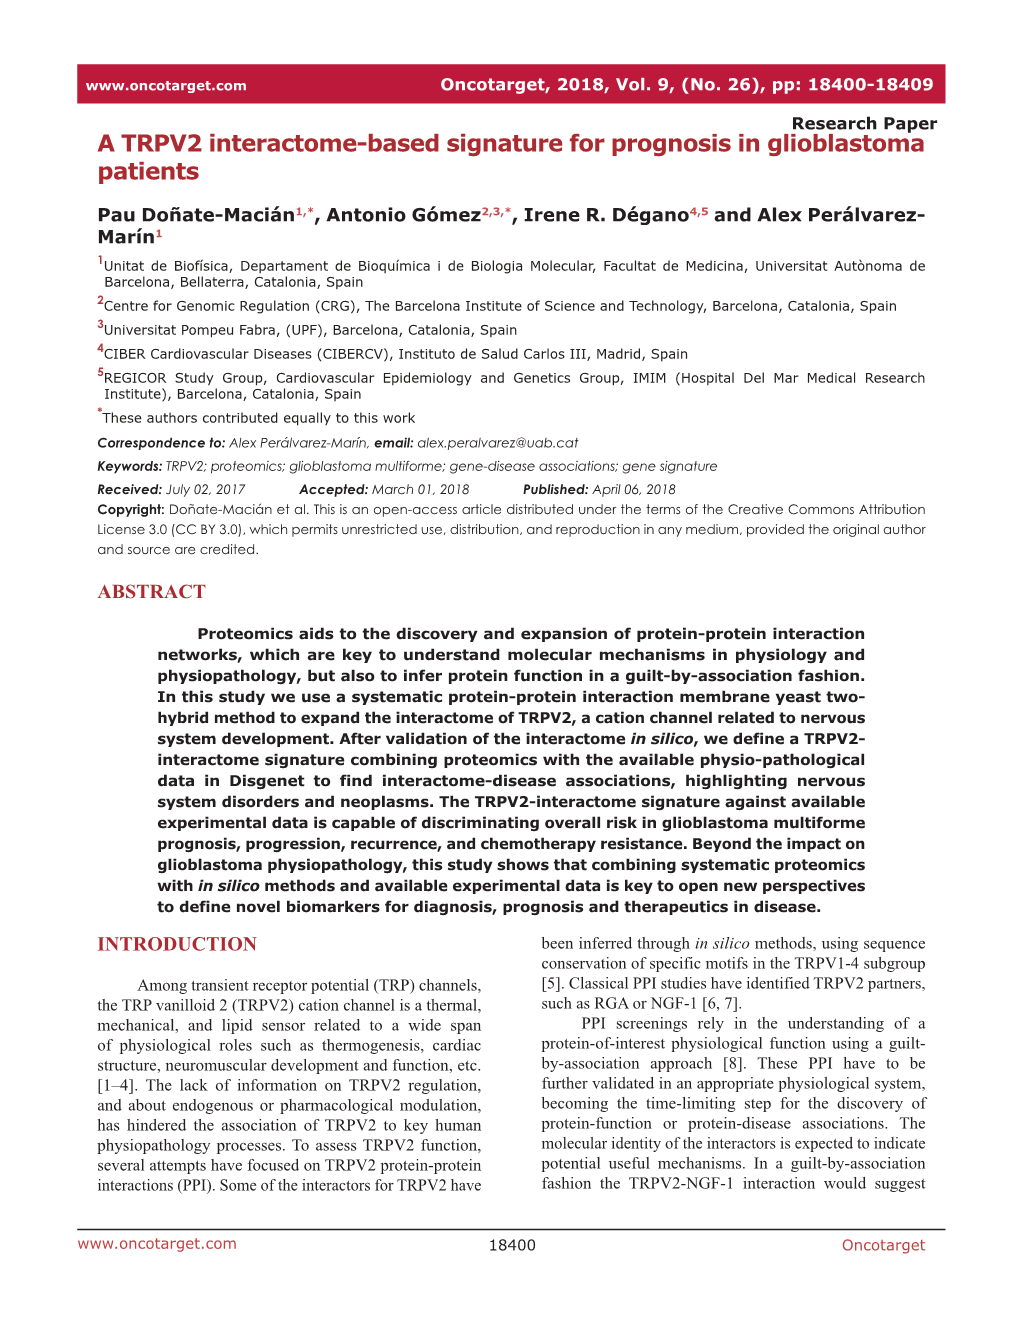 A TRPV2 Interactome-Based Signature for Prognosis in Glioblastoma Patients